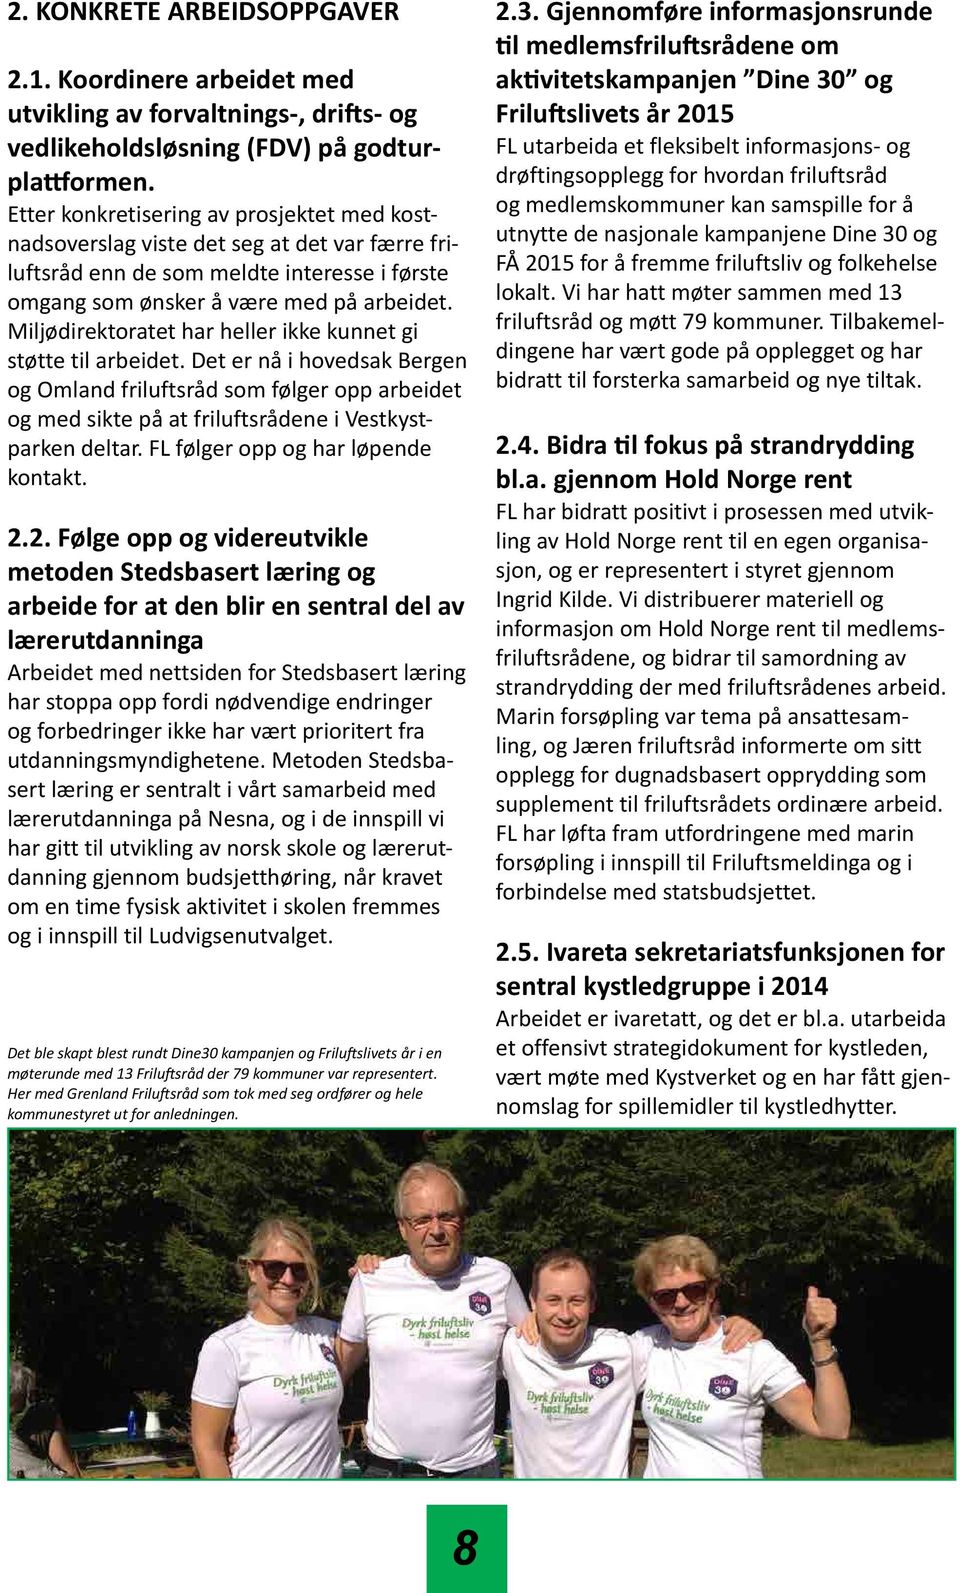 Miljødirektoratet har heller ikke kunnet gi støtte til arbeidet. Det er nå i hovedsak Bergen og Omland friluftsråd som følger opp arbeidet og med sikte på at friluftsrådene i Vestkystparken deltar.